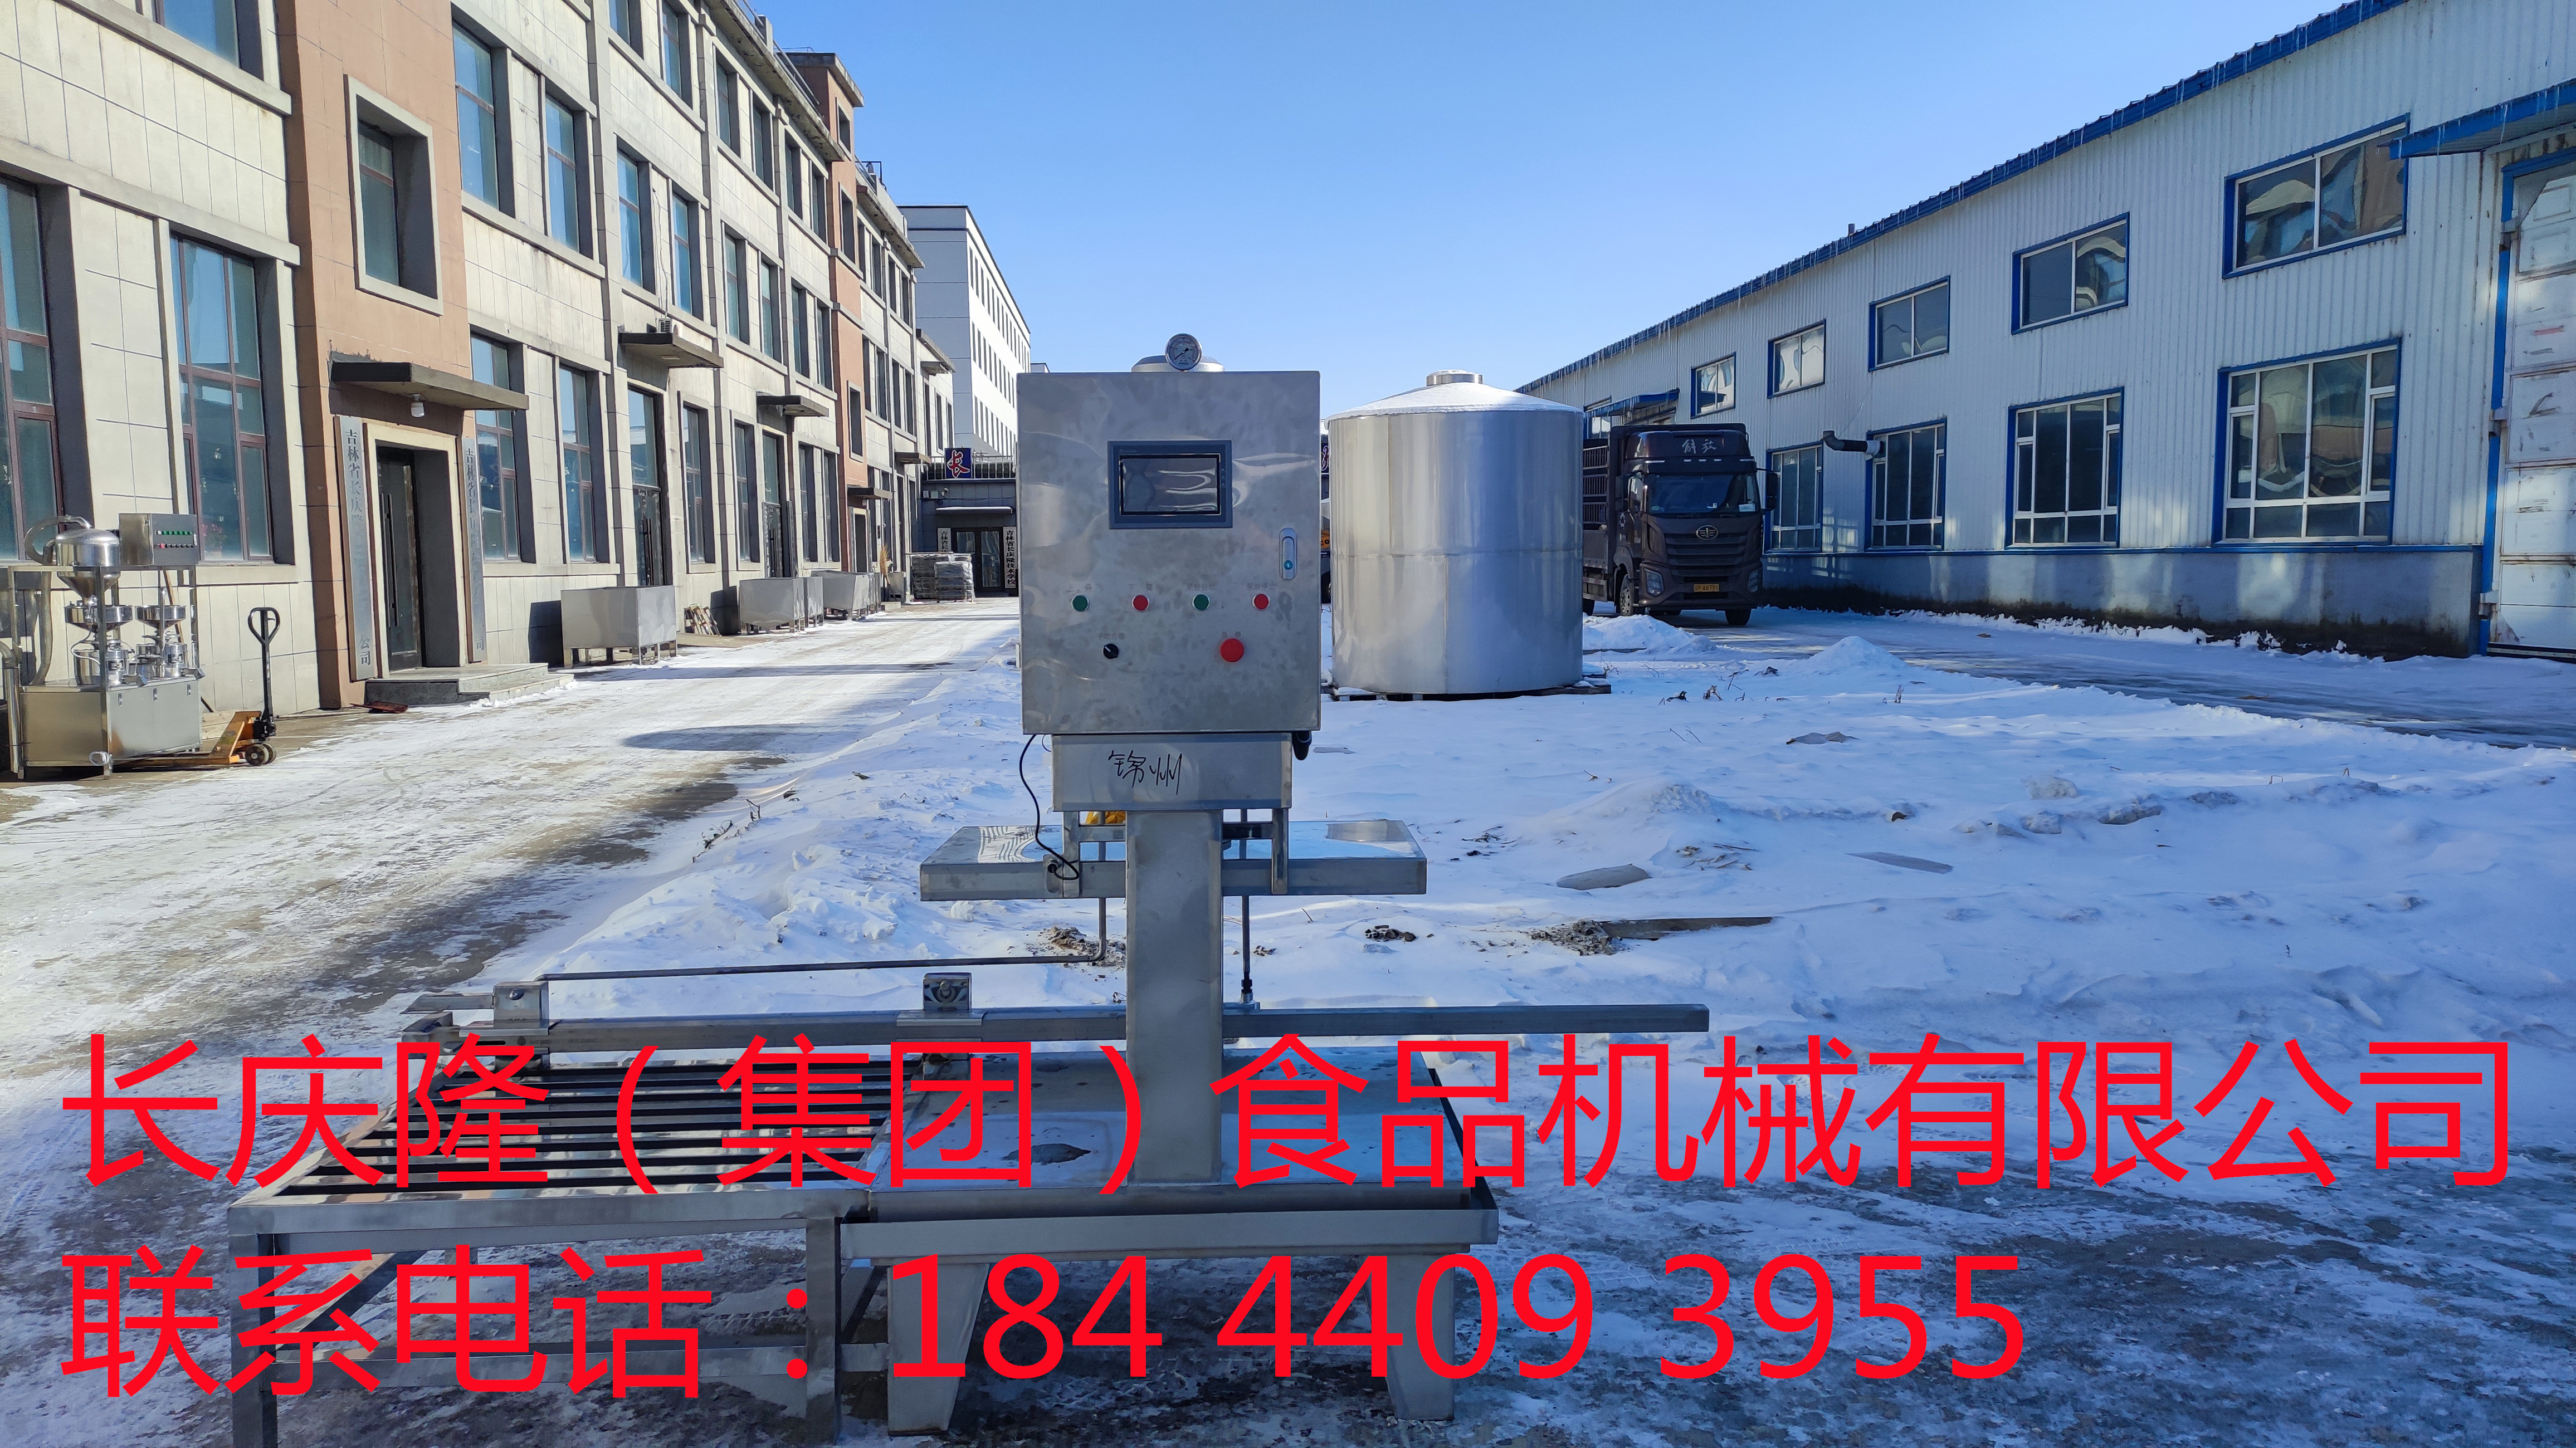 发往锦州的大型豆腐机设备装车发货 (9)_副本.jpg